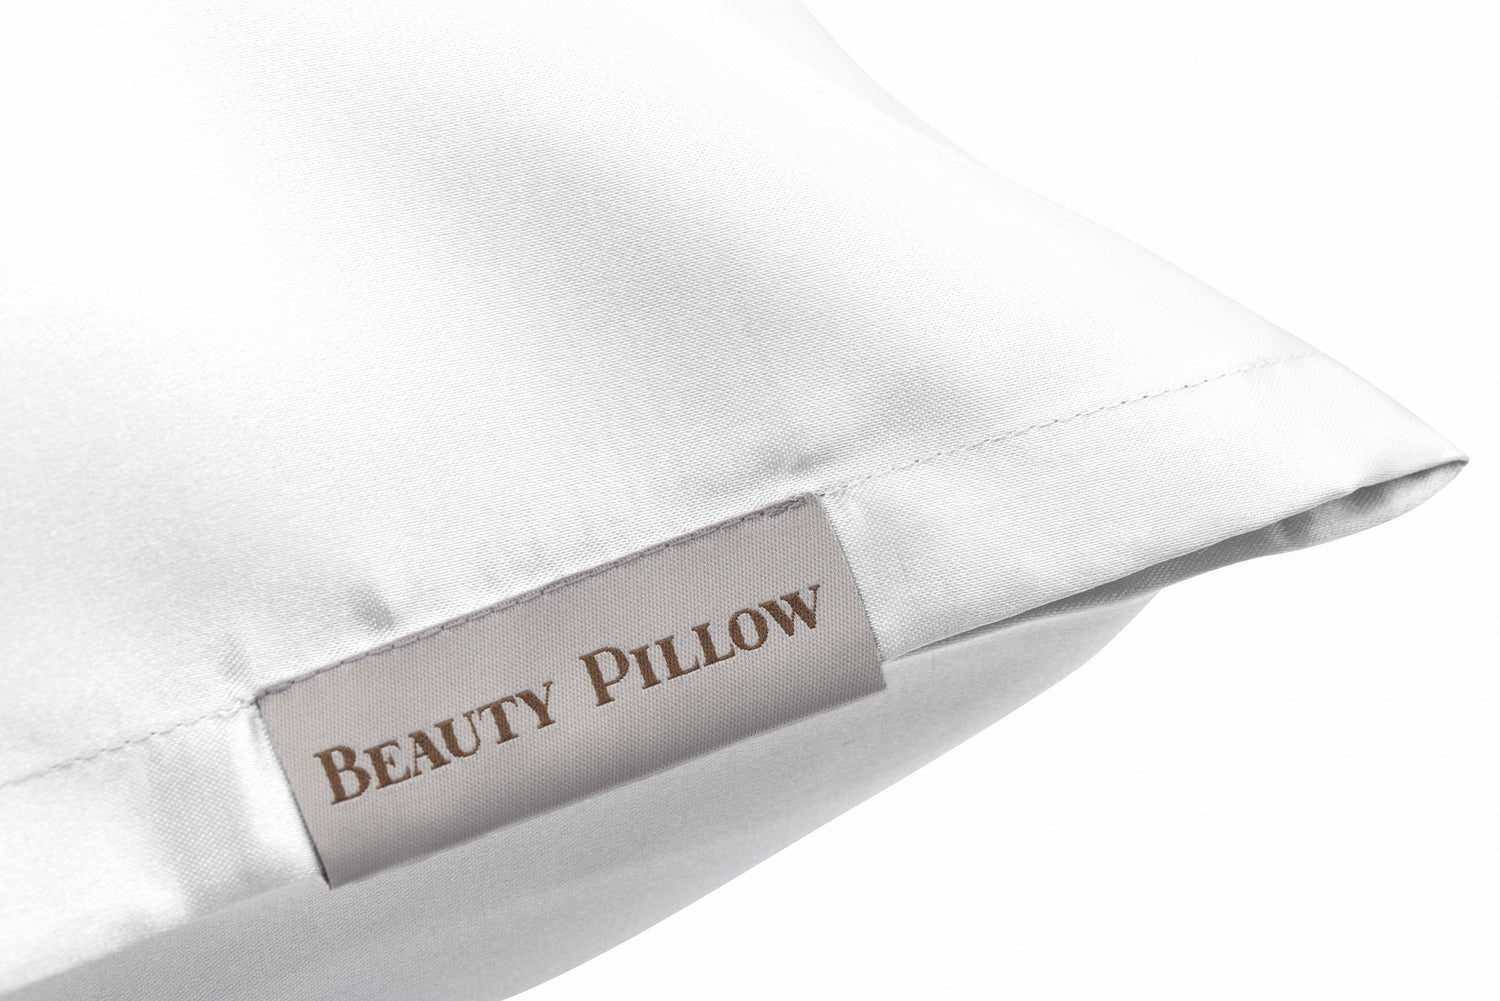 Beauty Pillow® White 60x70